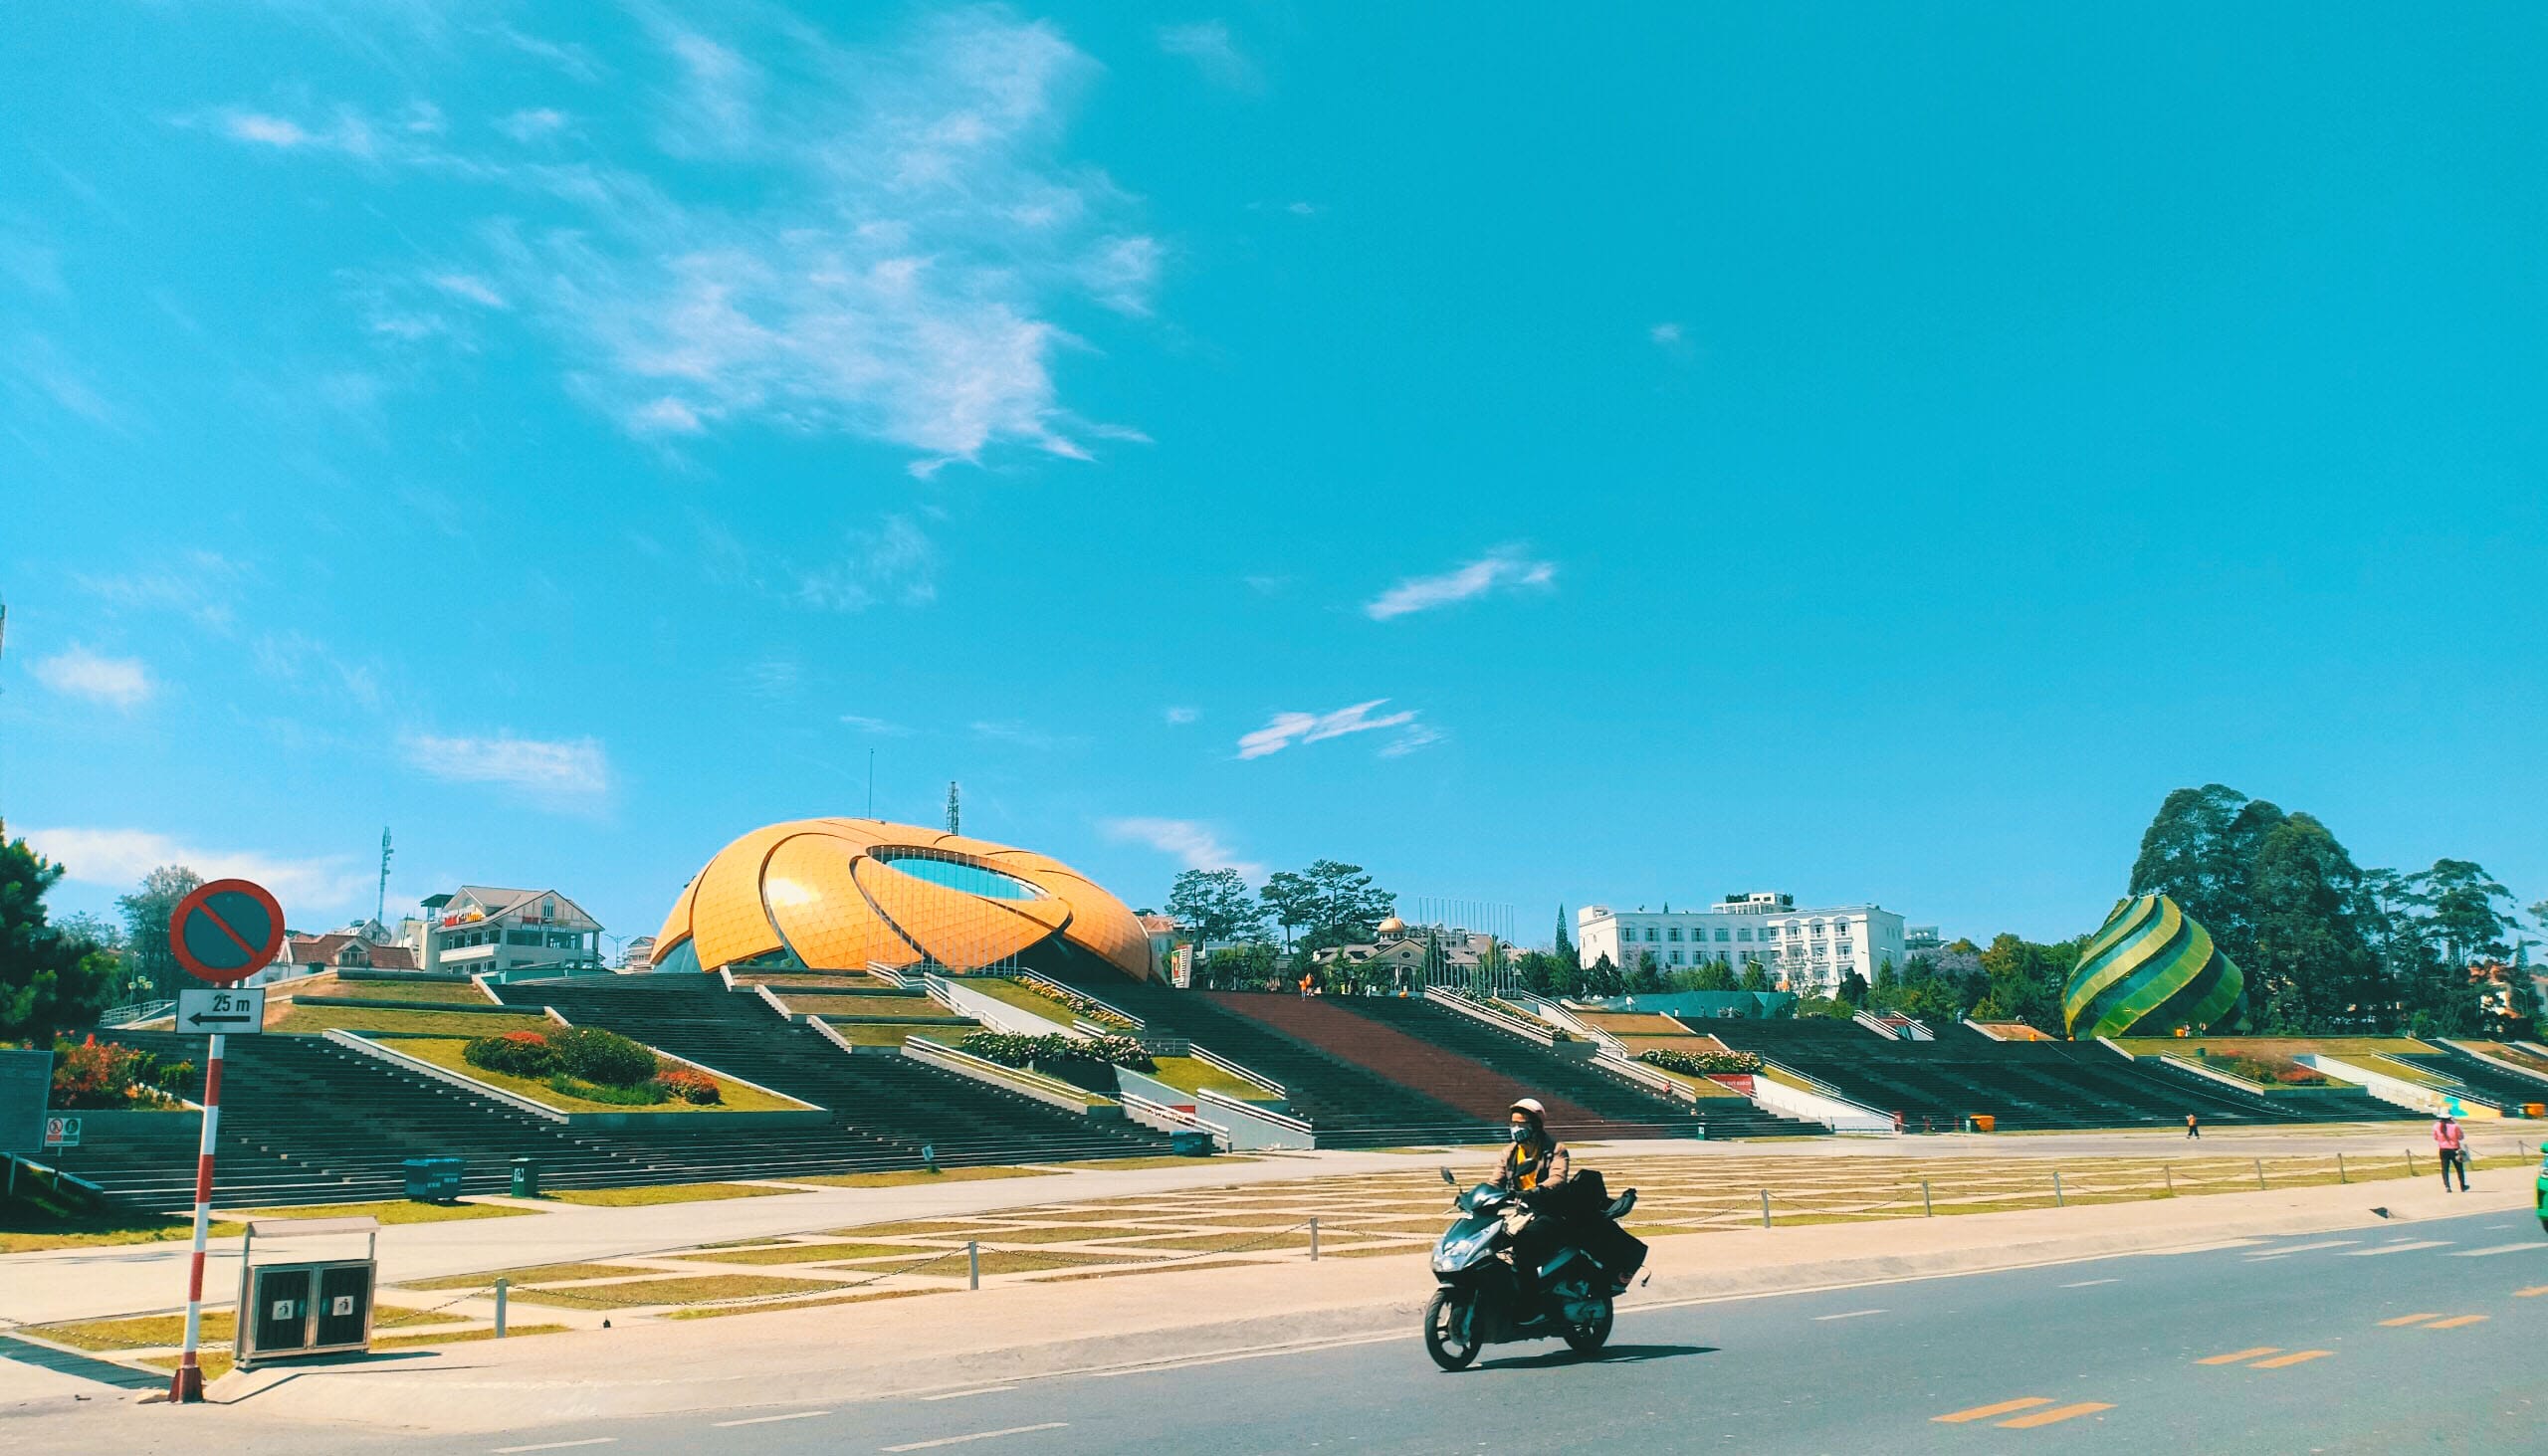 Tour du lịch Đà Lạt 3 ngày 2 đêm khởi hành từ Hà Nội / TP HCM